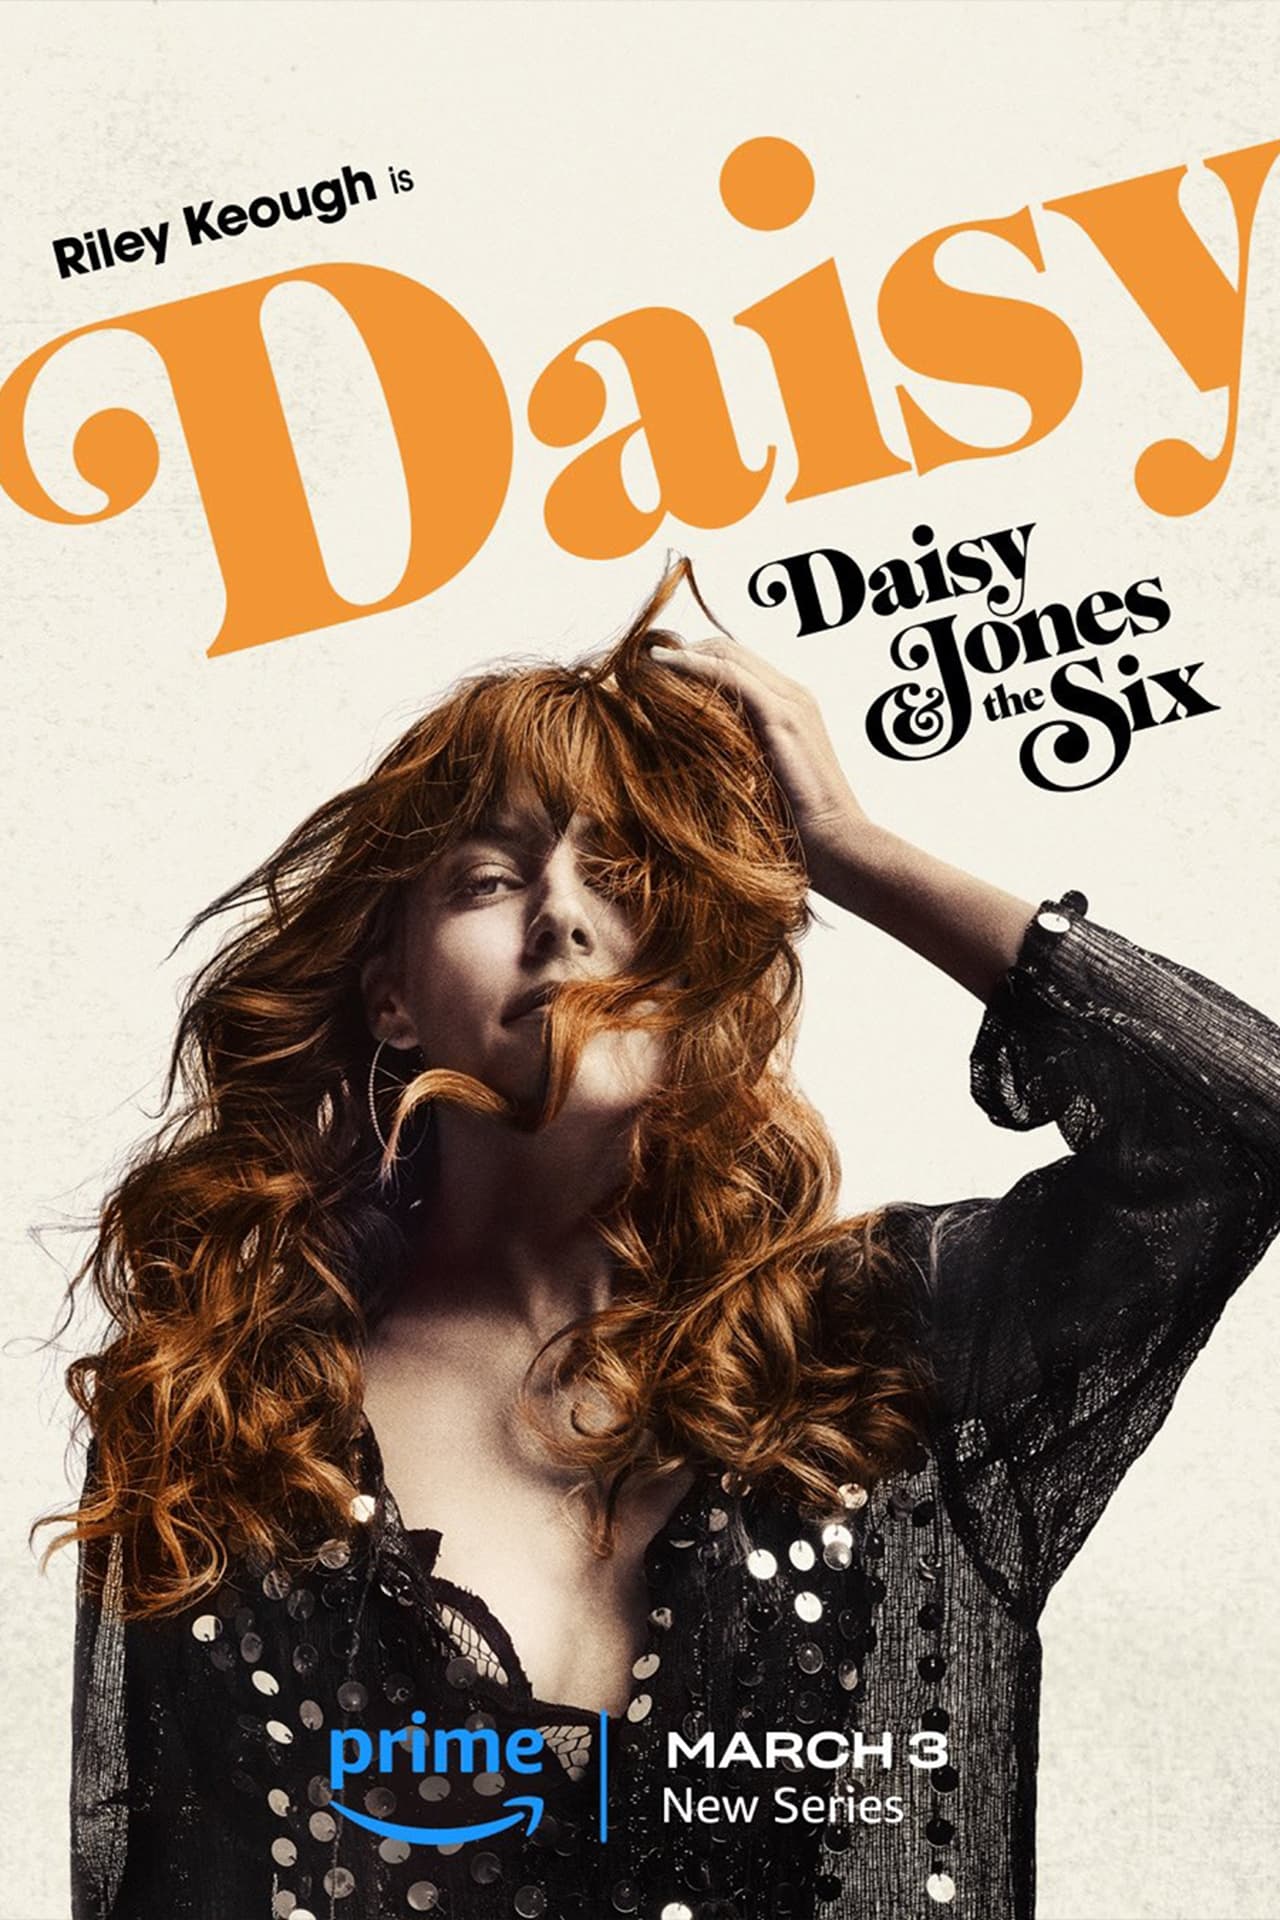 Daisy Jones & The Six (2023) S1 EP01&EP10 640Kbps 24Fps 48Khz 5.1Ch DD+ AMZN E-AC3 Turkish Audio TAC